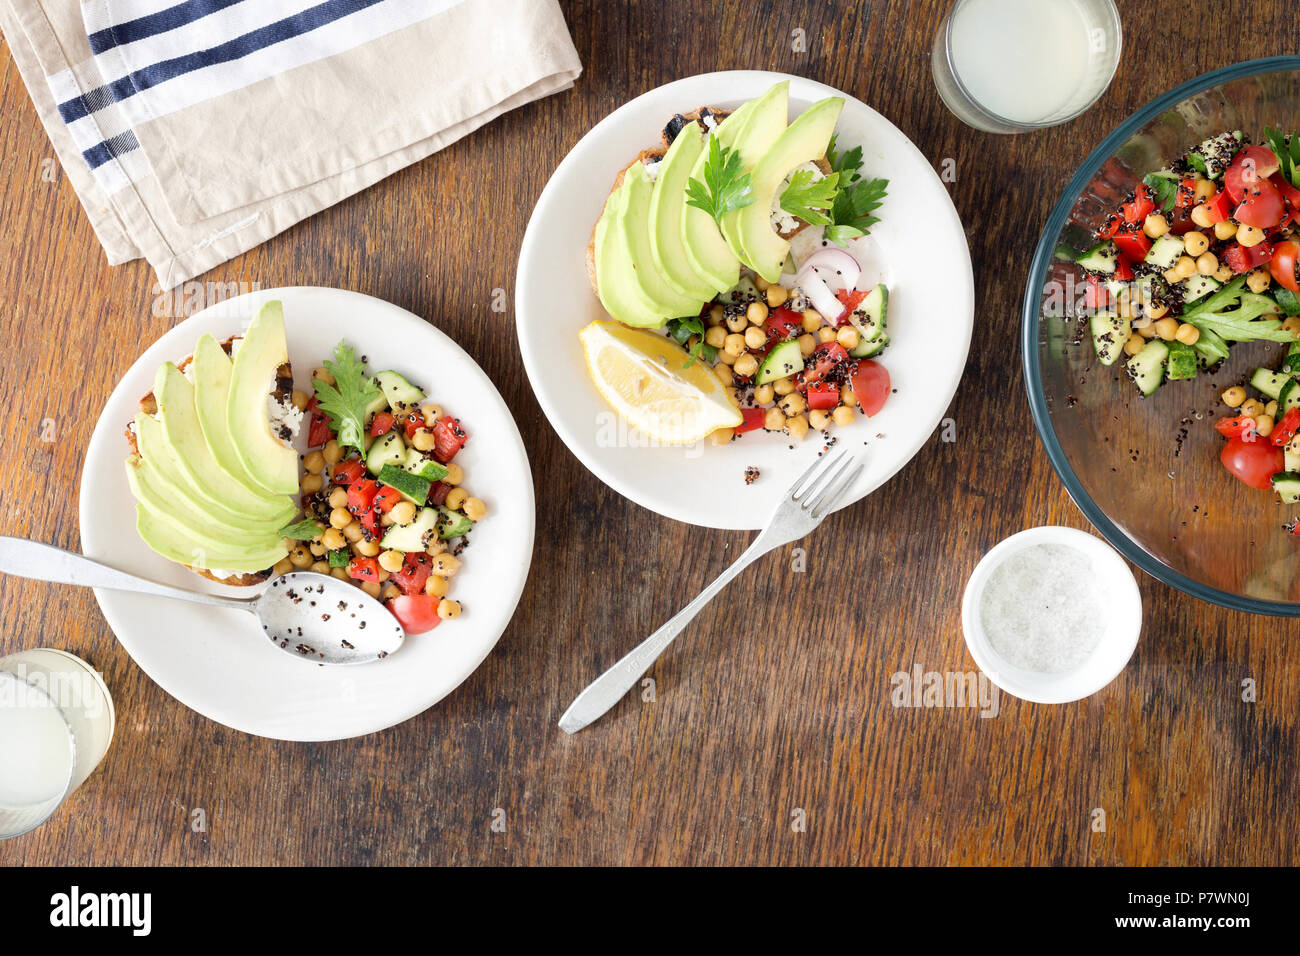 Gustosa e sana cucina vegetariana. Insalata di quinoa nero, i ceci e le verdure con avocado bruschetta su un tavolo di legno con limonata, vista dall'alto Foto Stock